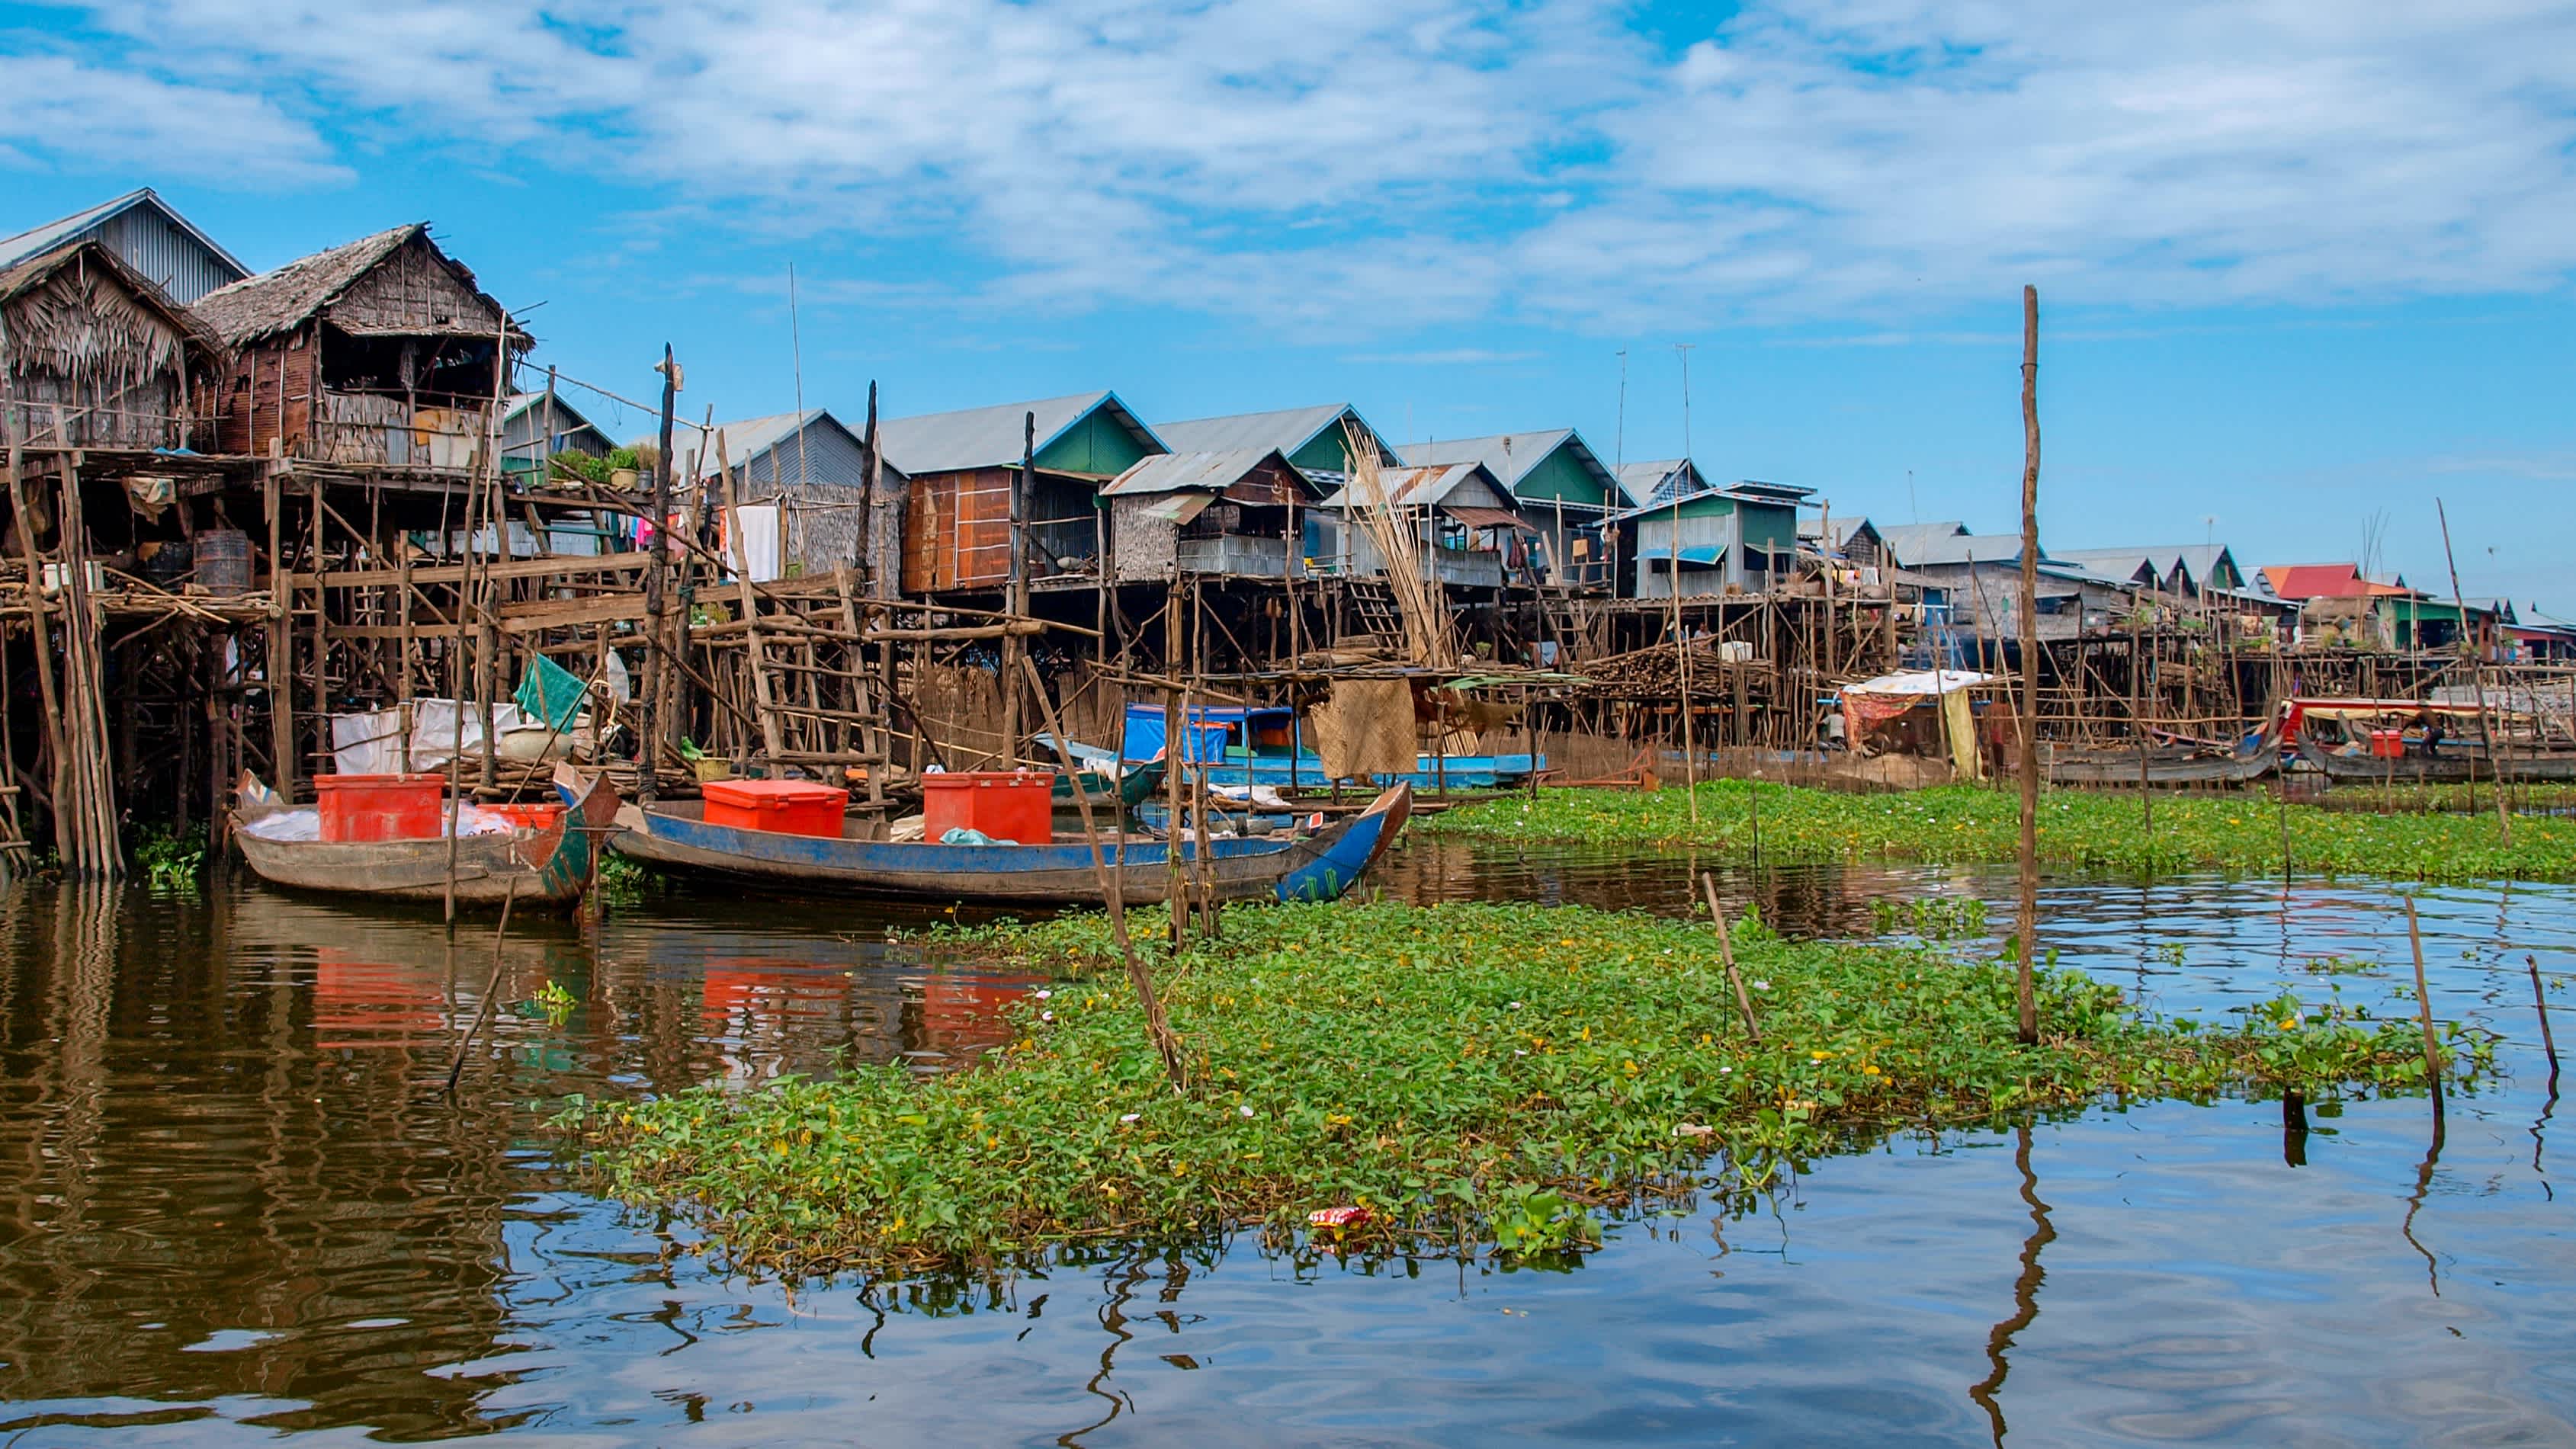 Tonle Sap See und das Dorf auf dem Wasser, Siem Reap, Kambodscha.

